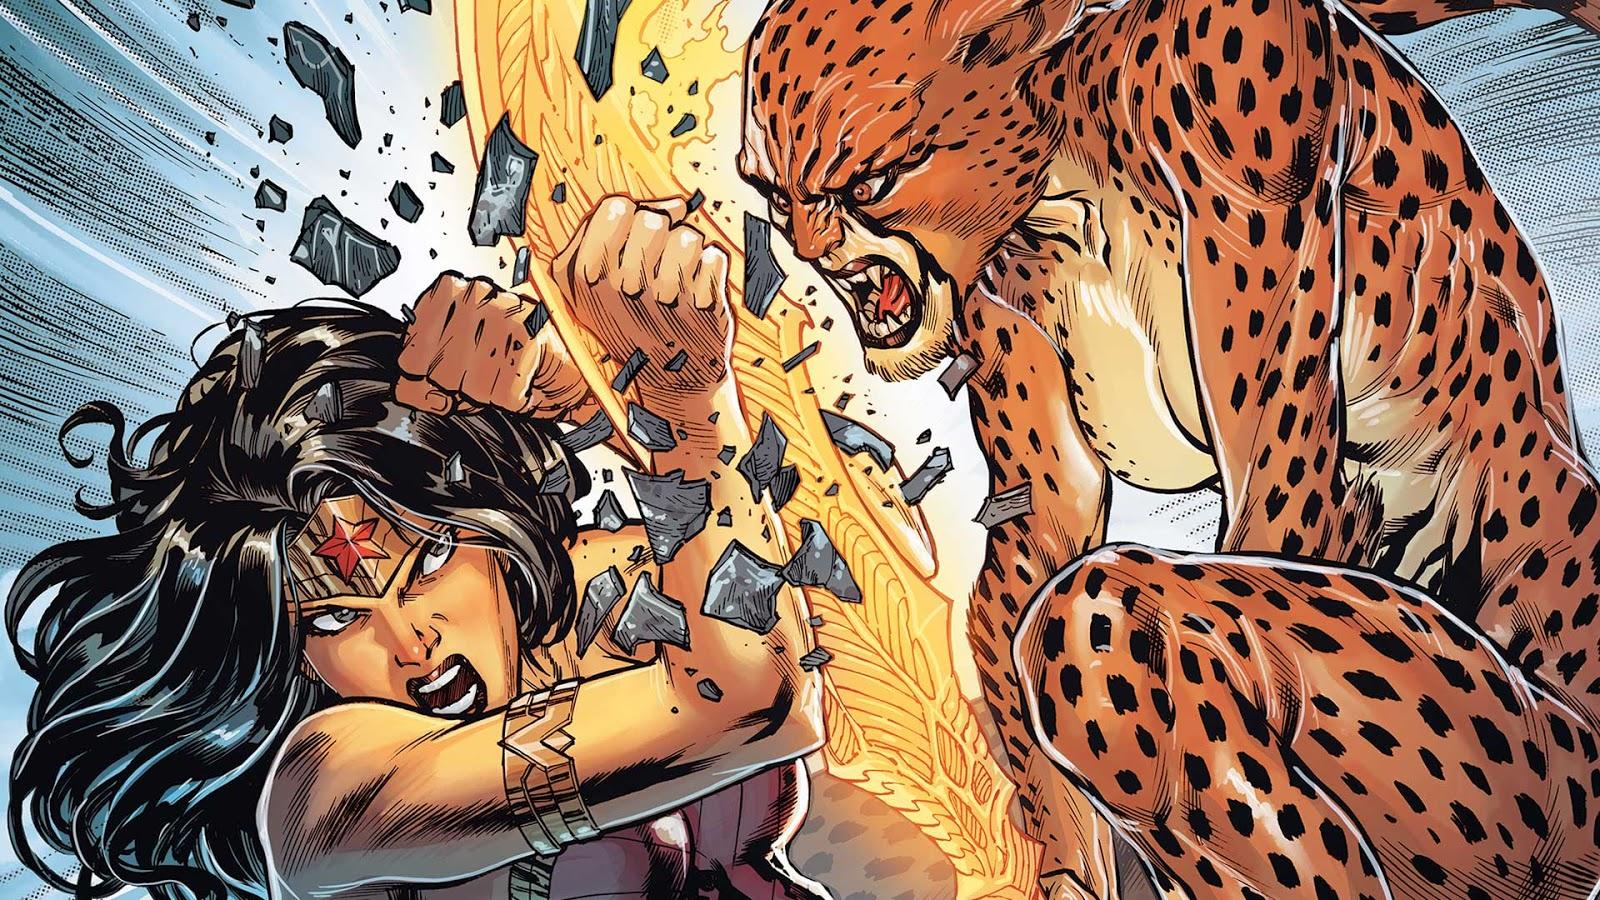 Wonder Woman Vs Cheetah Art Wallpapers.